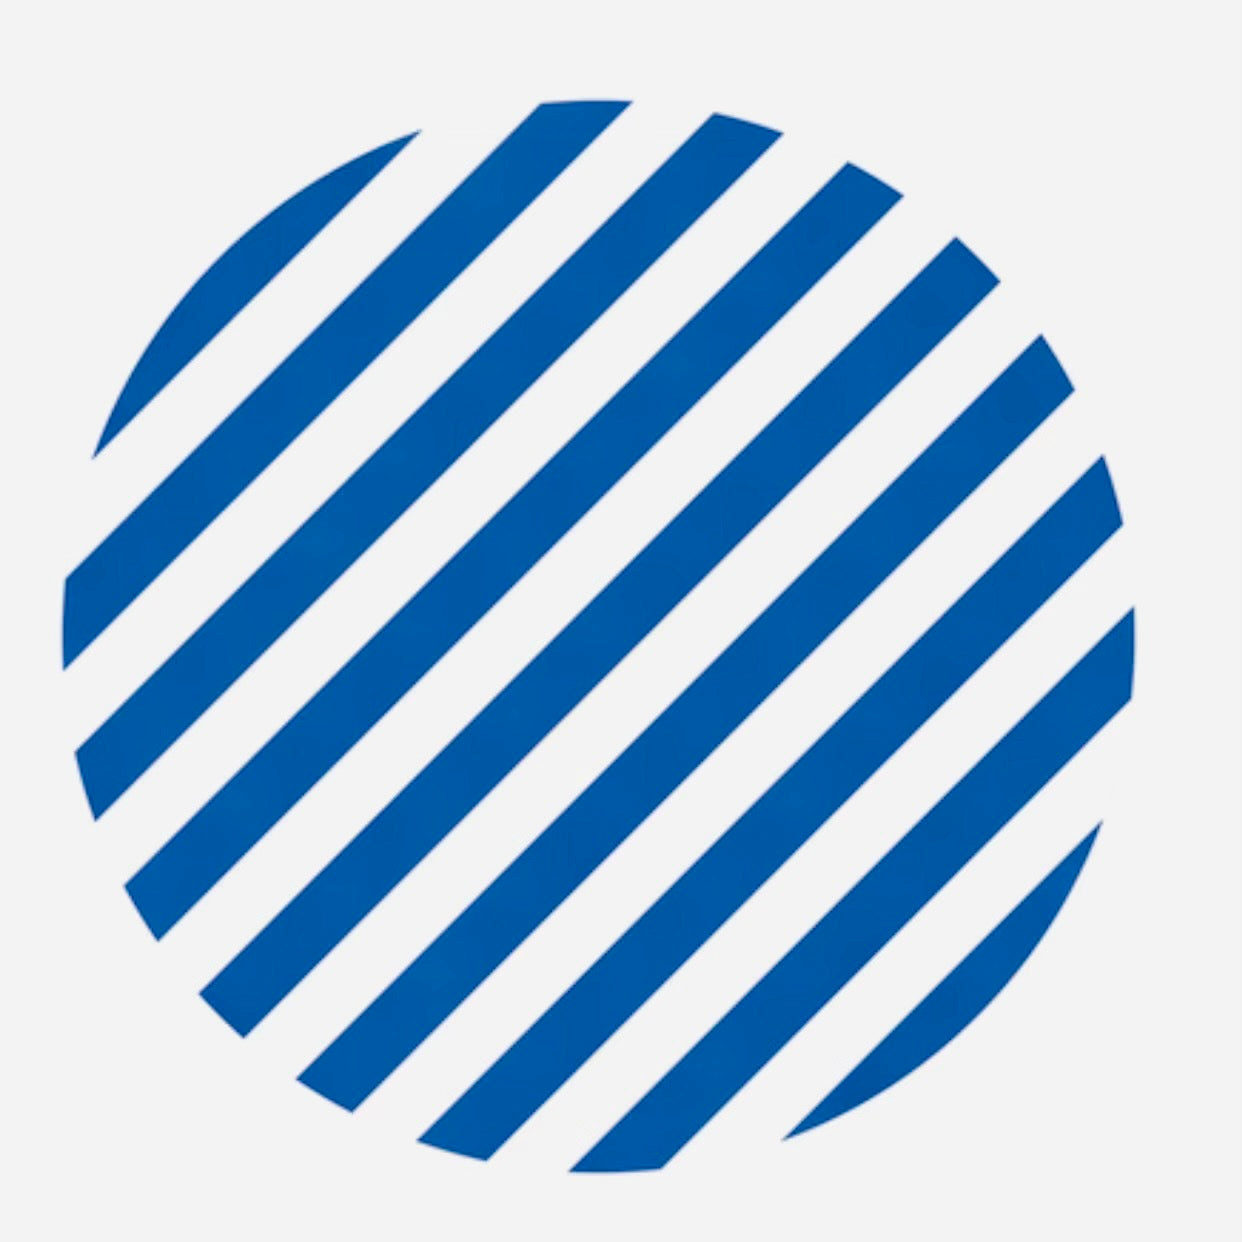 Round Stickers - Blue Stripe